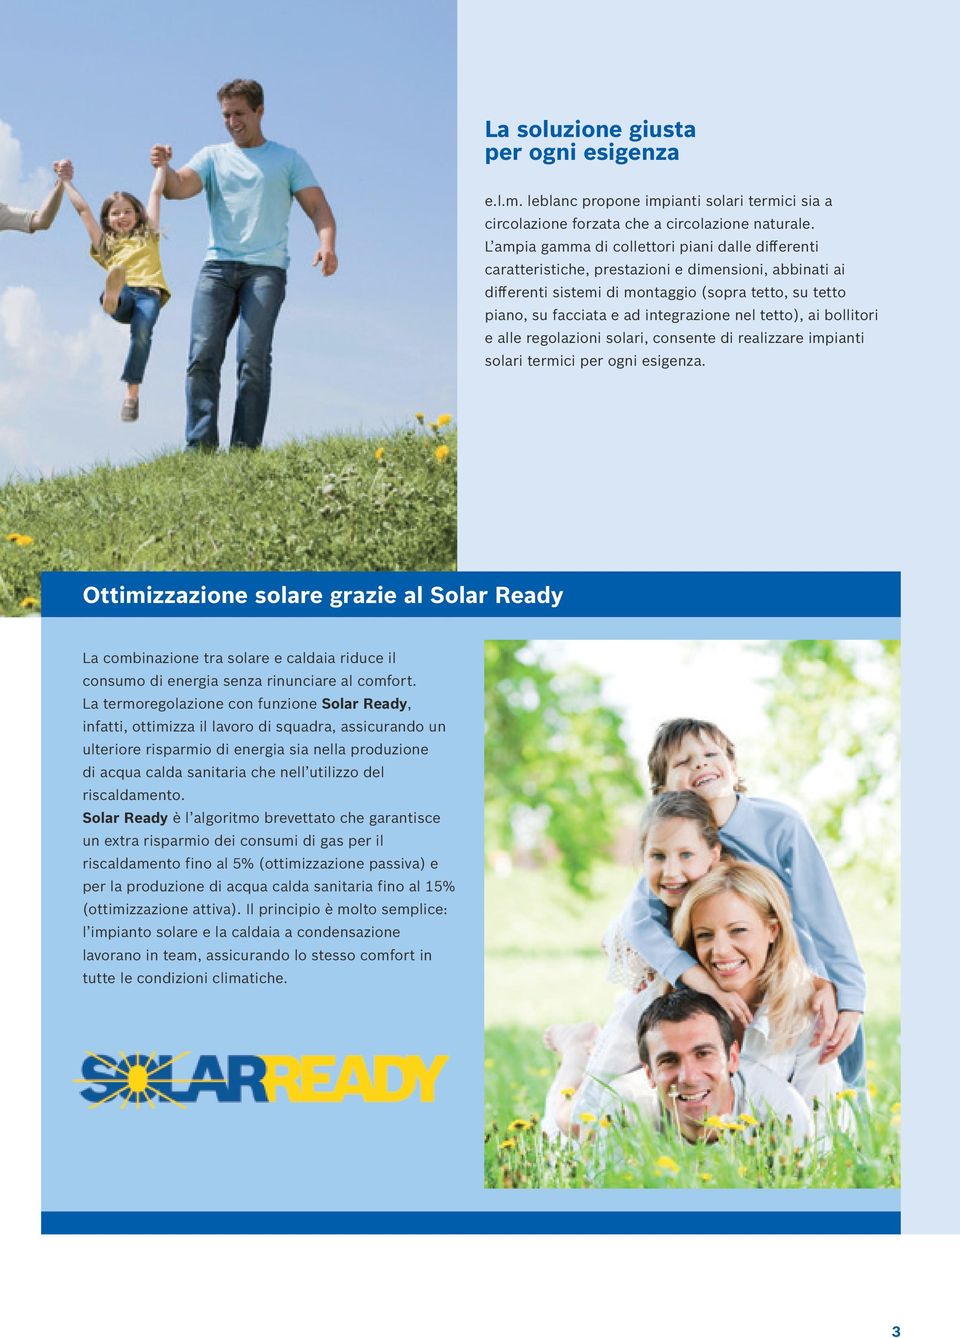 nel tetto), ai bollitori e alle regolazioni solari, consente di realizzare impianti solari termici per ogni esigenza.